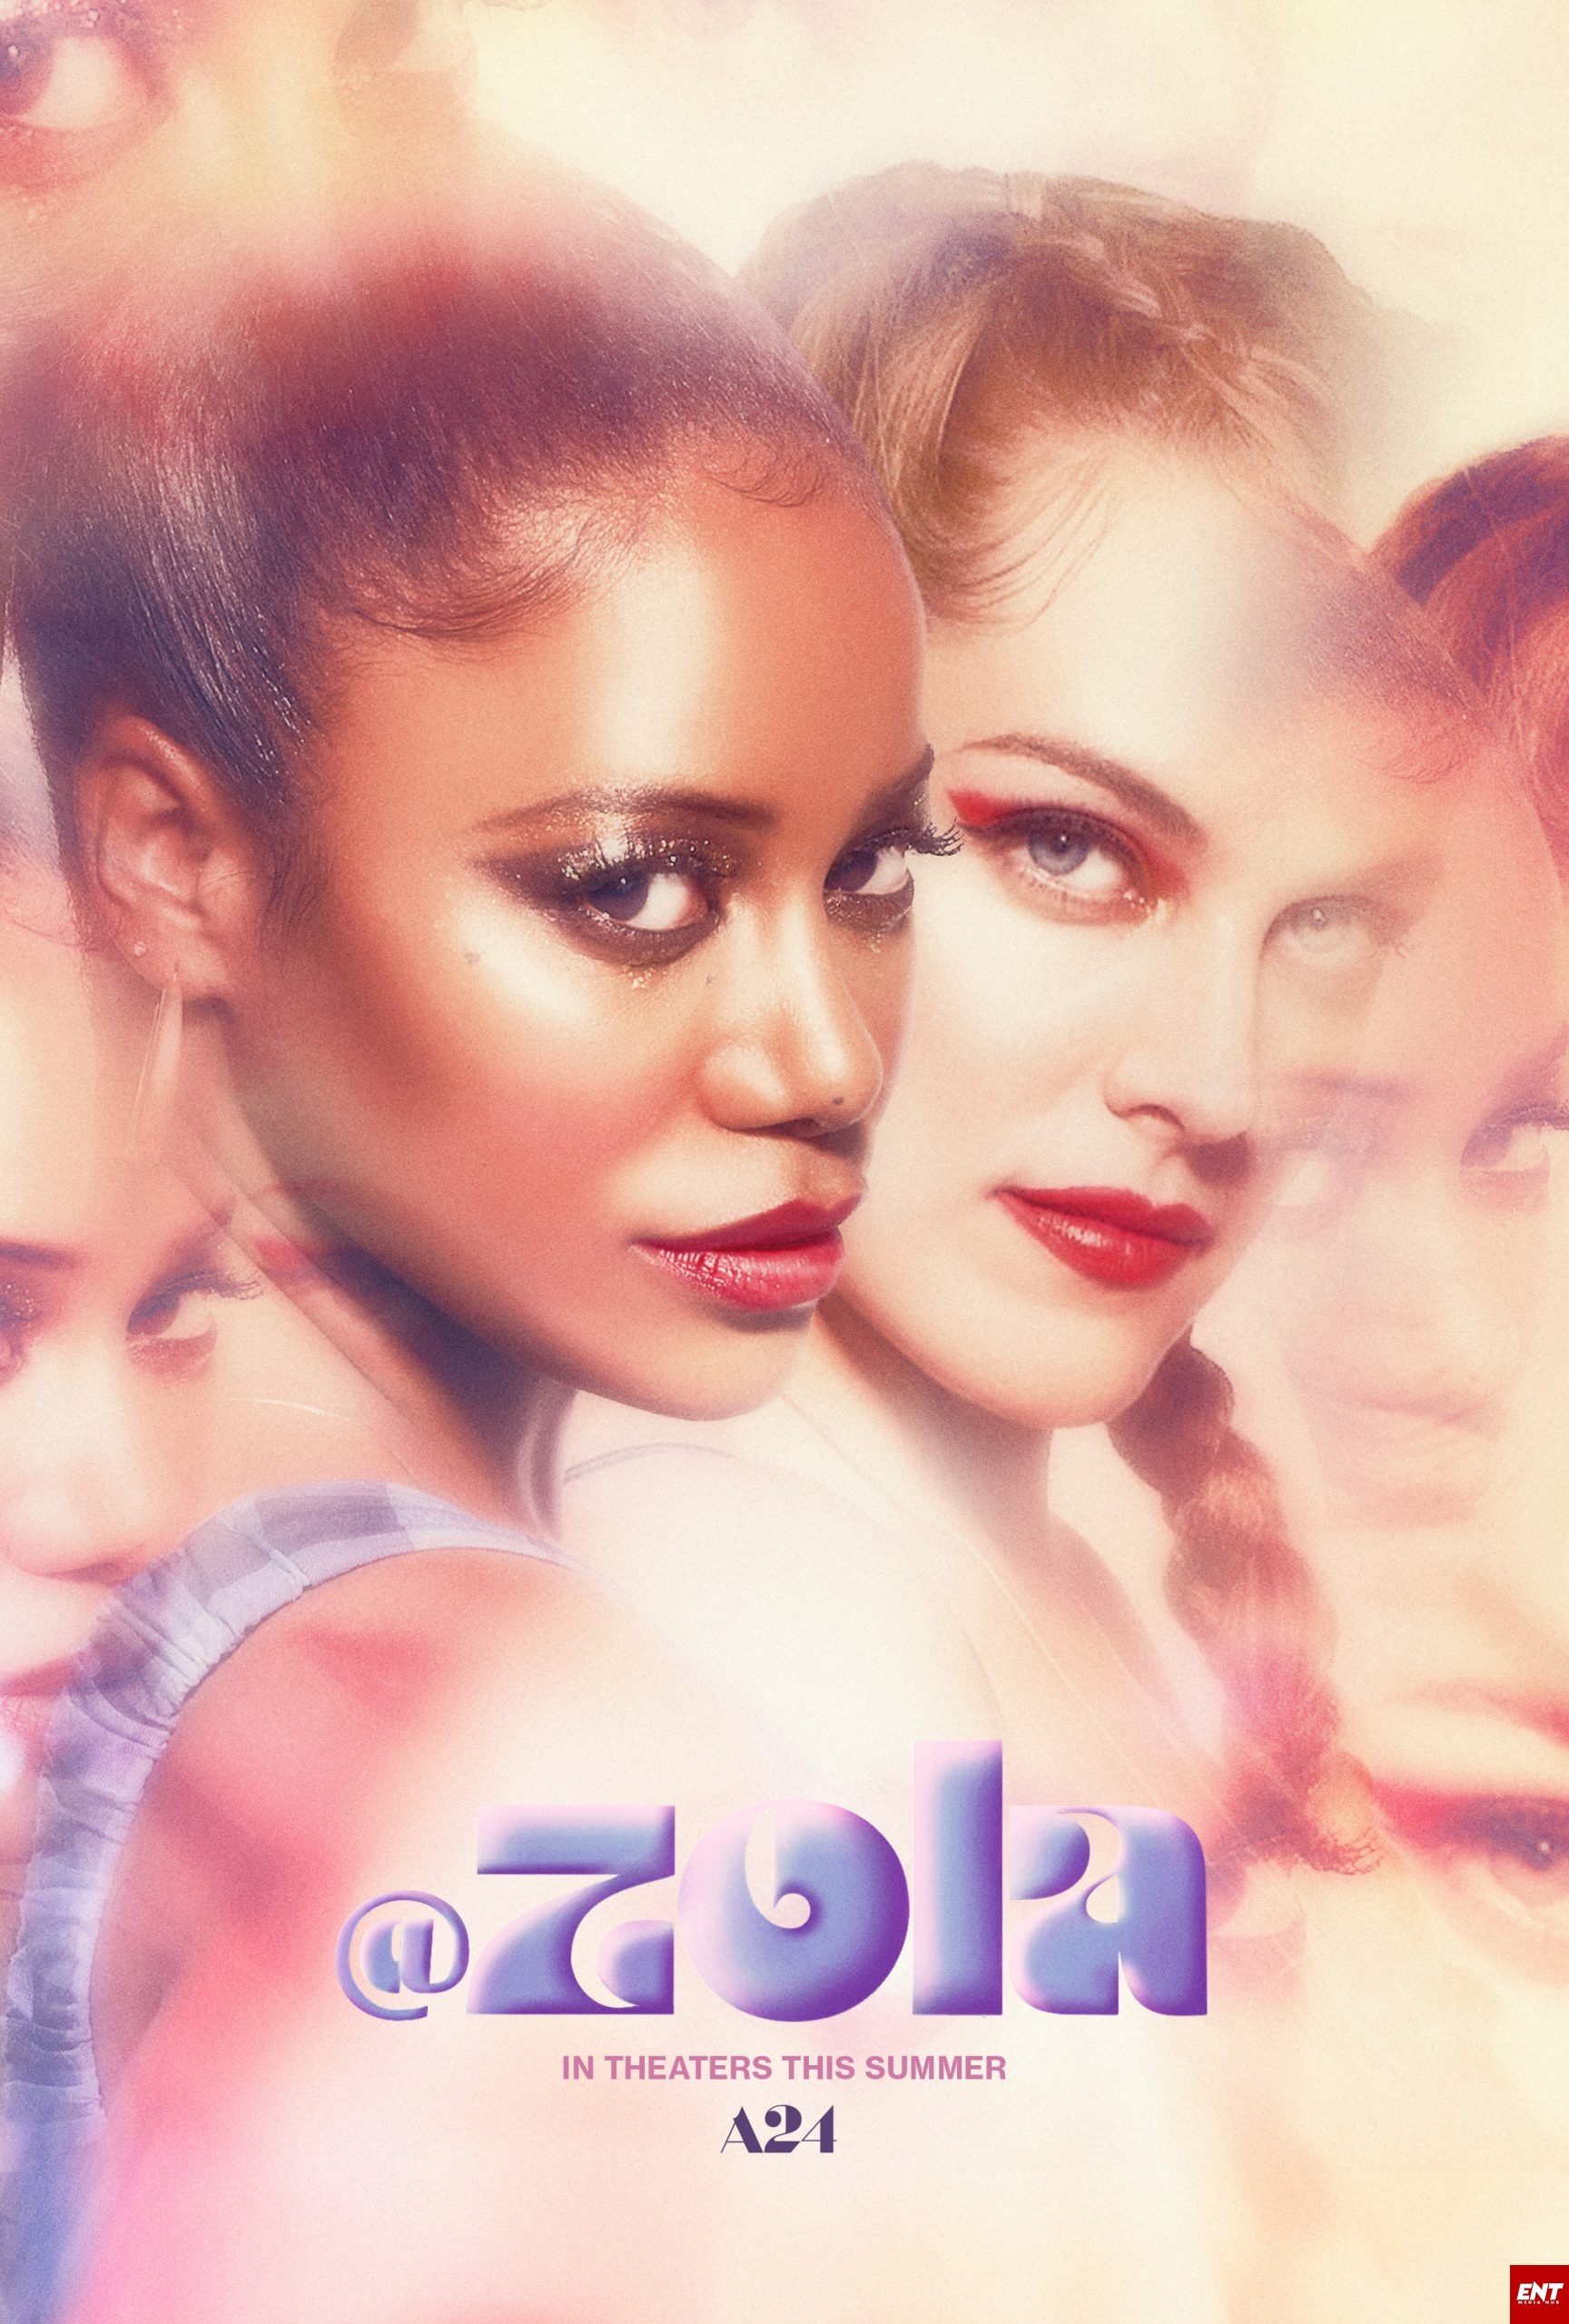 MOVIE : Zola (2020)